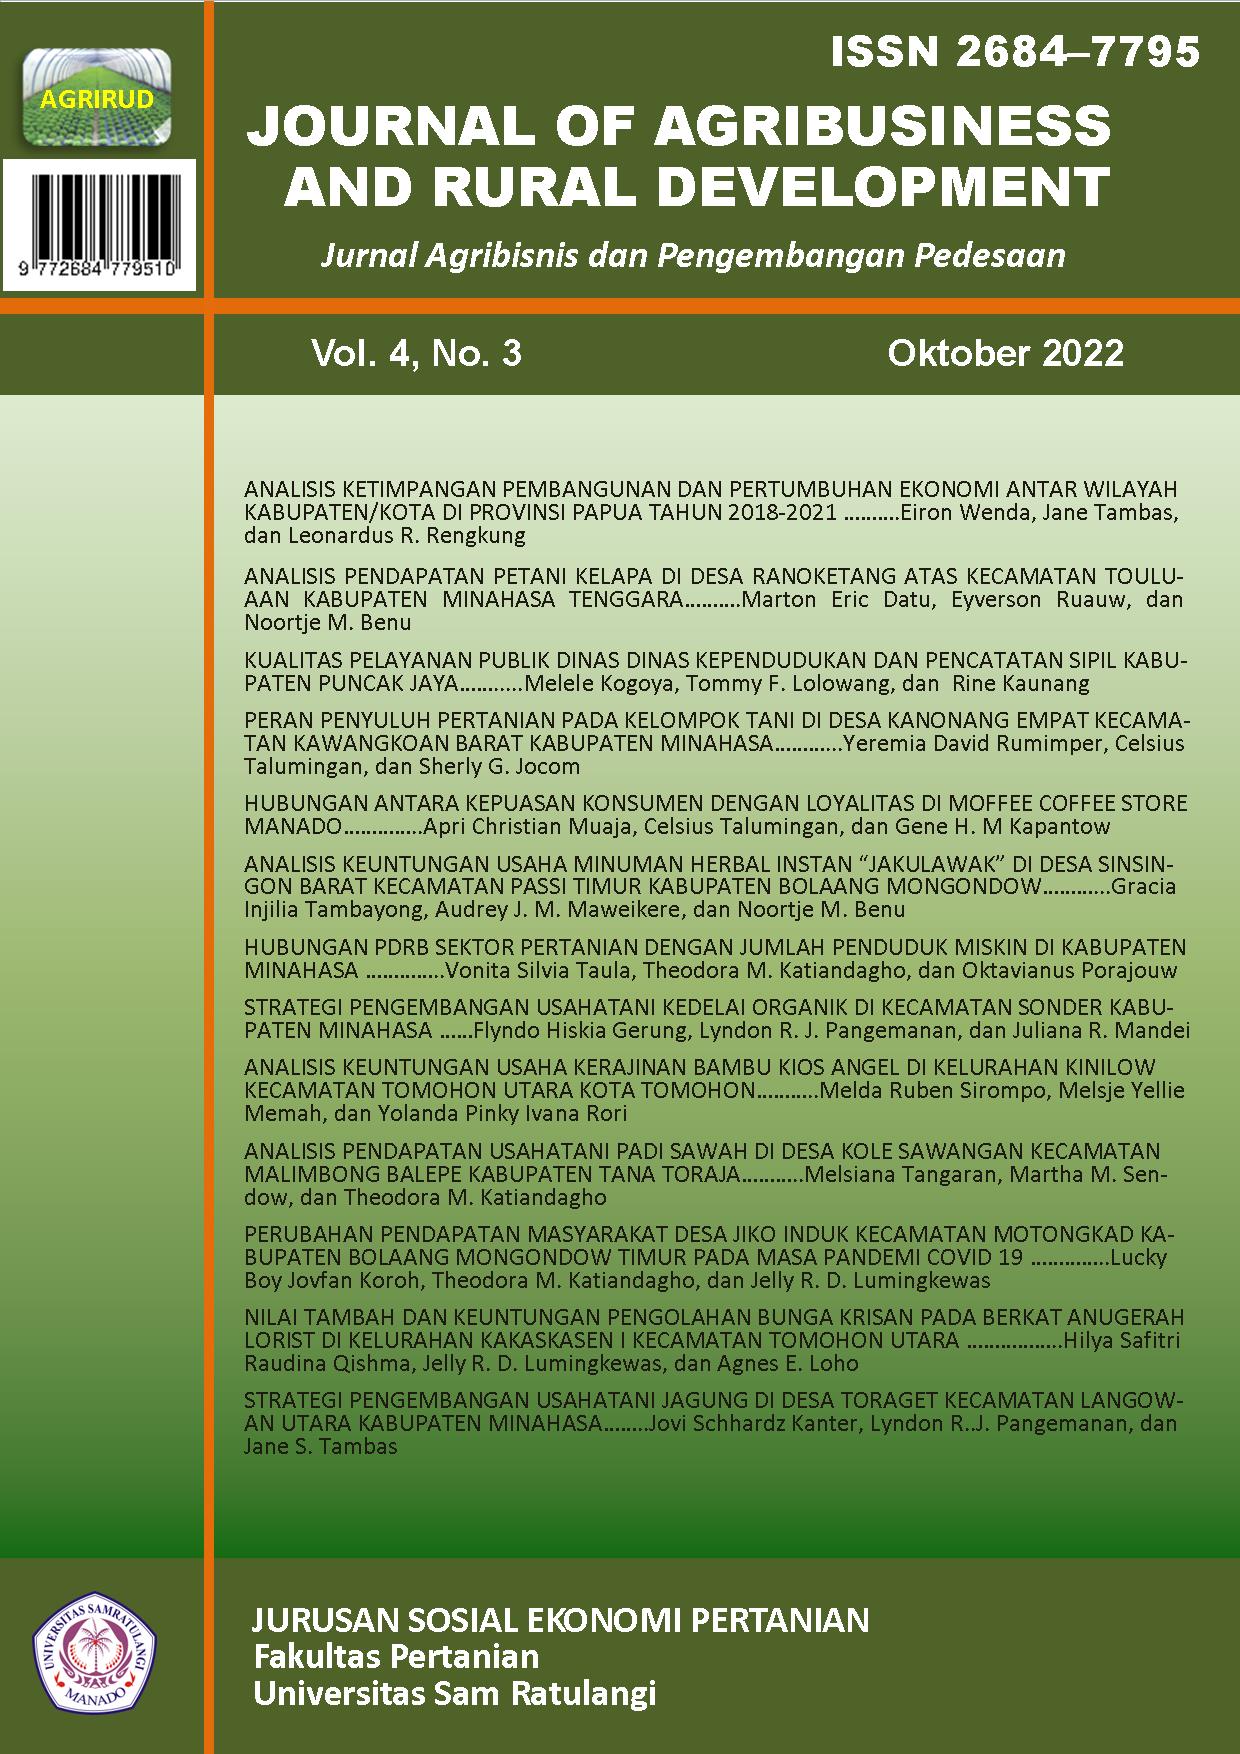 					View Vol. 4 No. 3 (2022): Journal of Agribusiness and Rural Development (Jurnal Agribisnis dan Pengembangan Pedesaan) - Oktober 2022
				